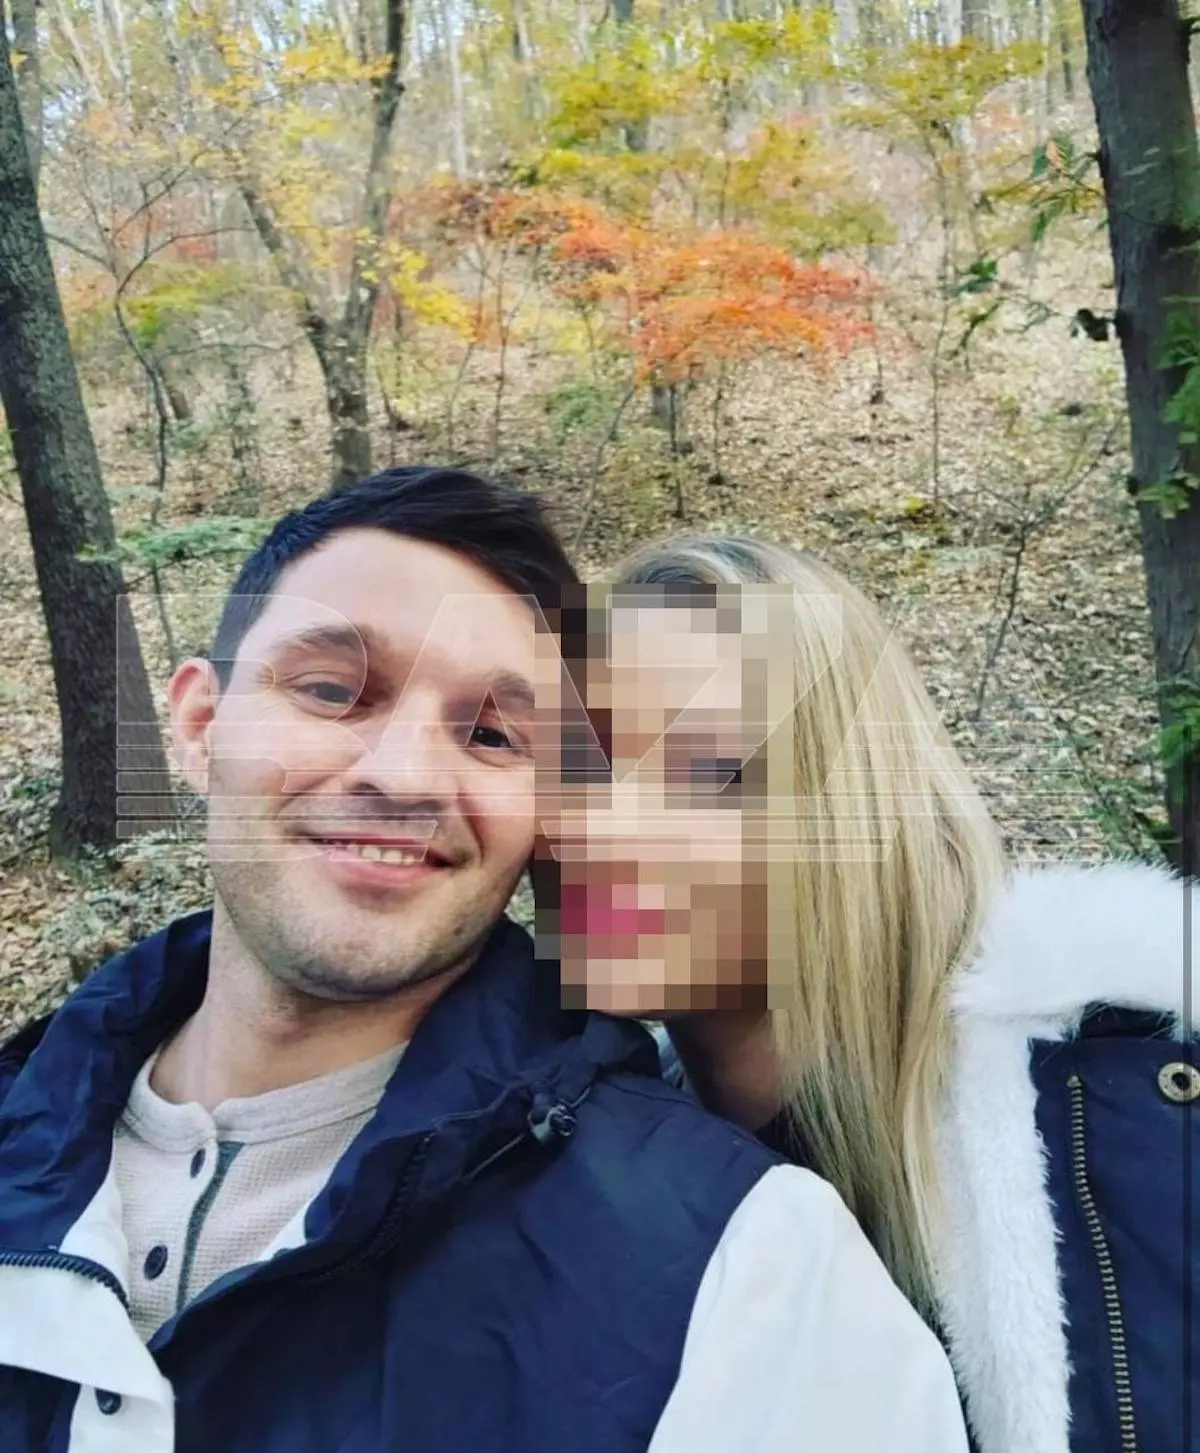 Задержанный американец встречался с россиянкой, будучи женатым, а затем избил ее